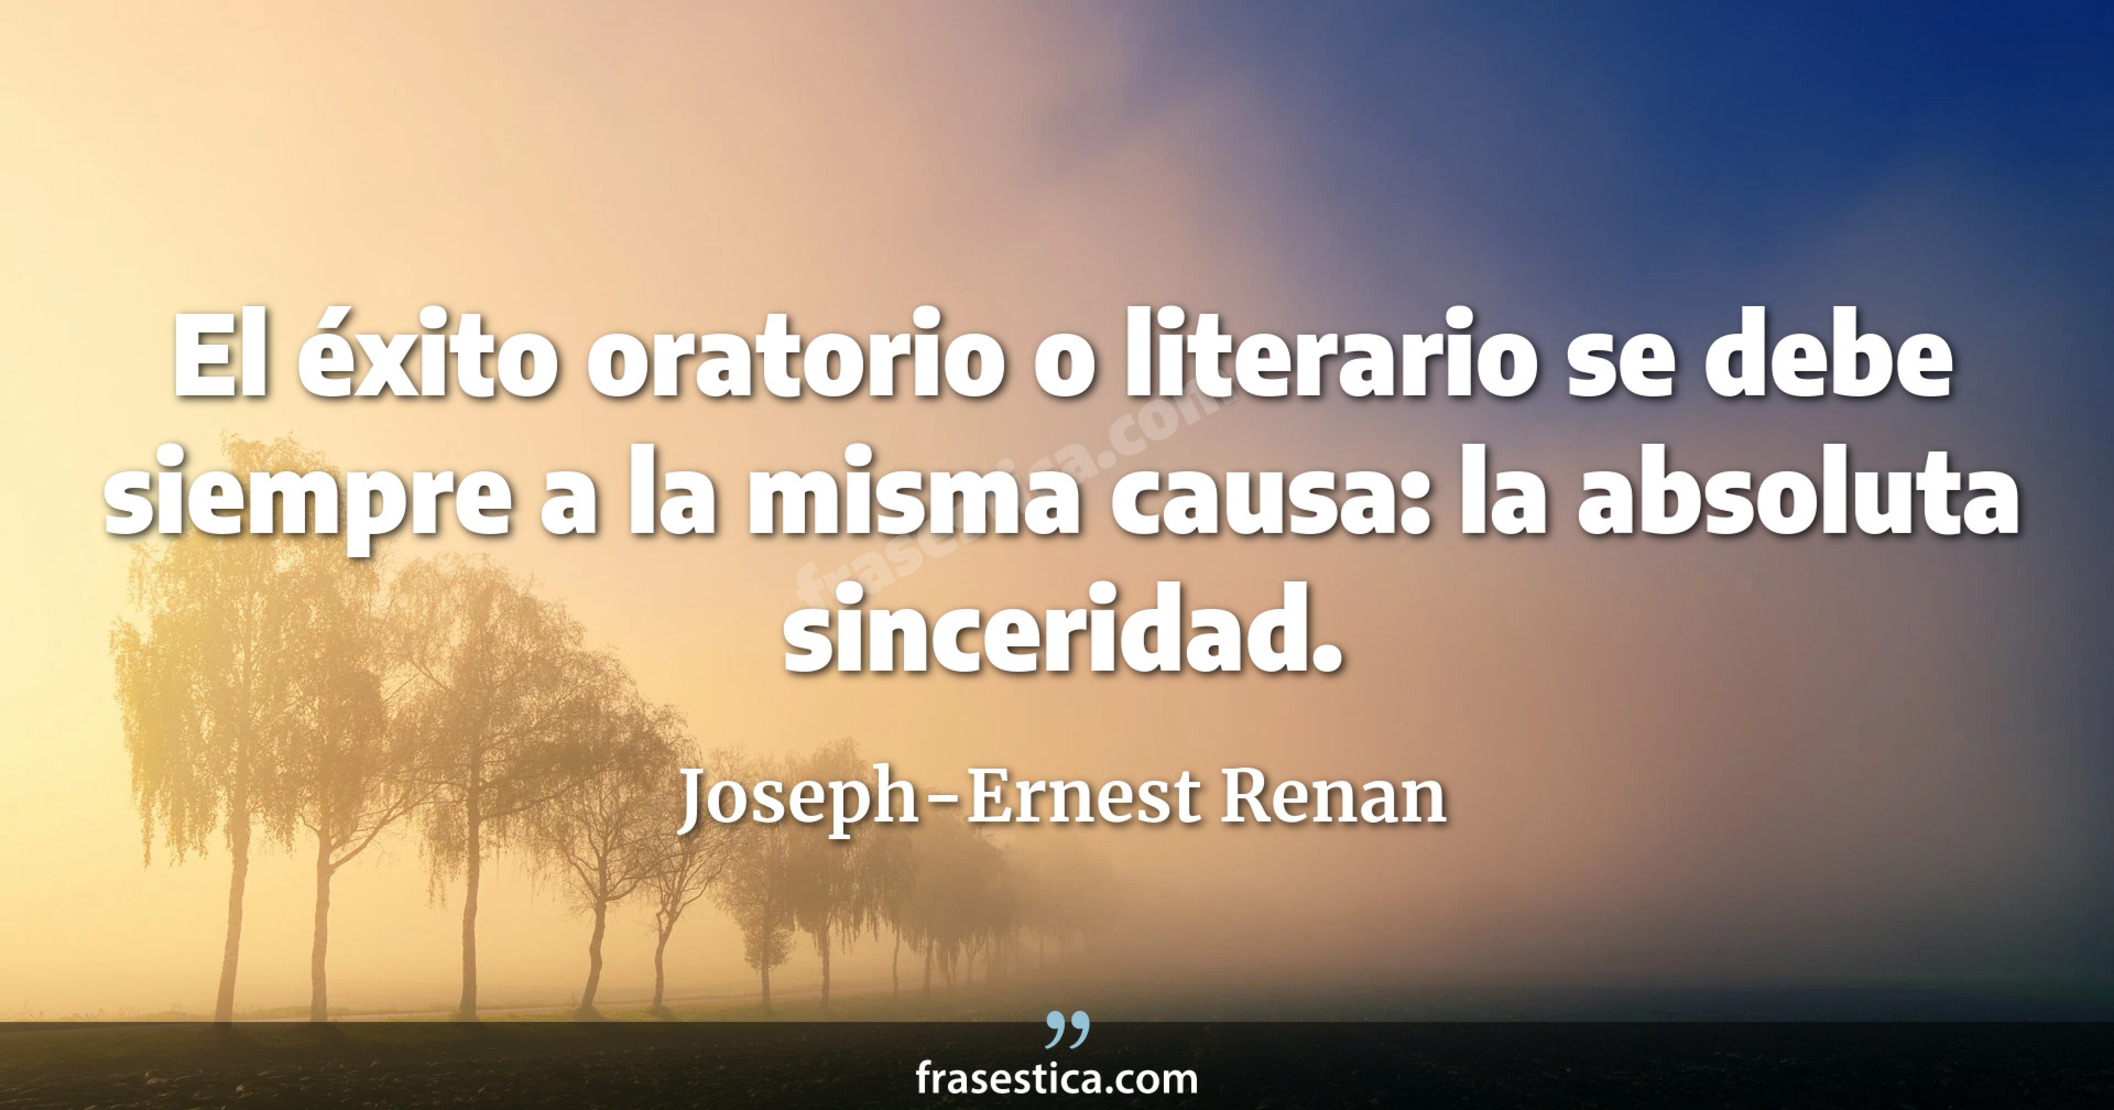 El éxito oratorio o literario se debe siempre a la misma causa: la absoluta sinceridad. - Joseph-Ernest Renan